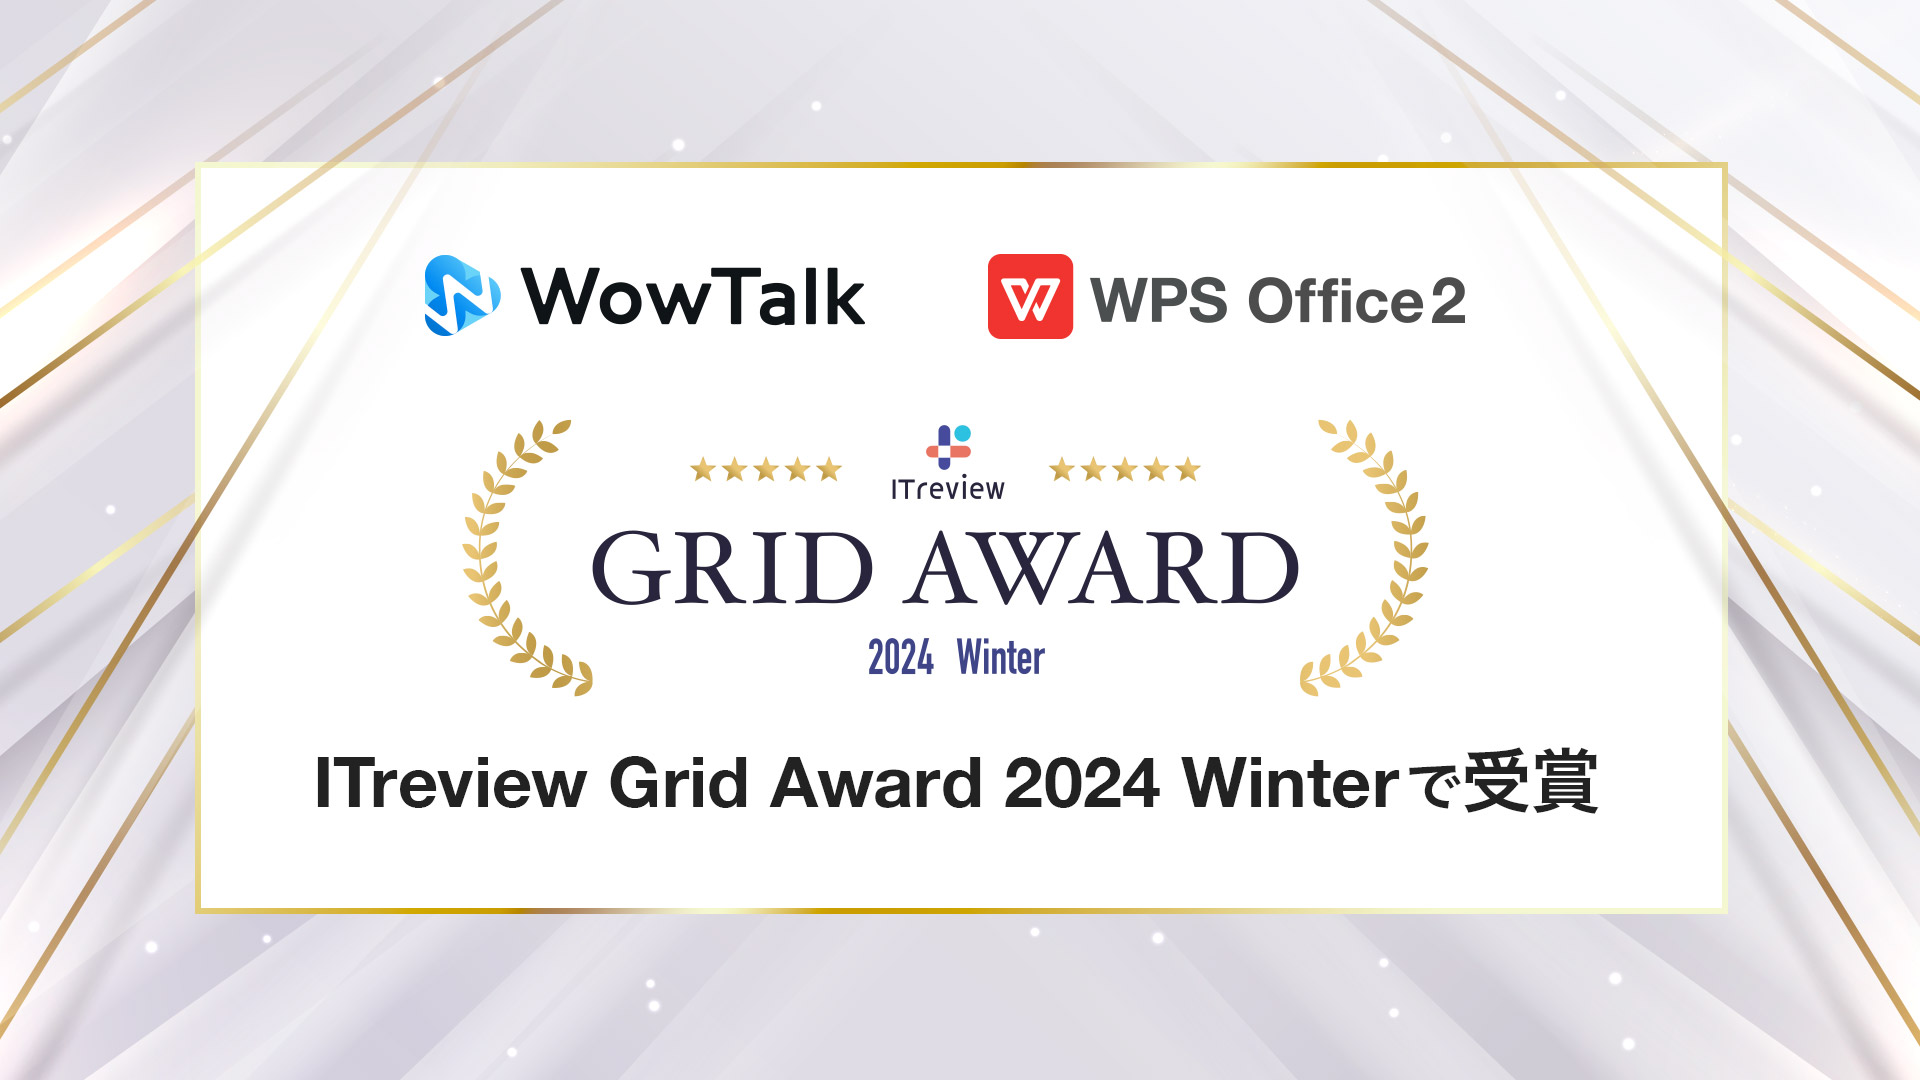 ビジネスチャット・社内SNS「WowTalk」とオフィスソフト「WPS Office」、ITreview Grid Award 2024 Winterにて受賞